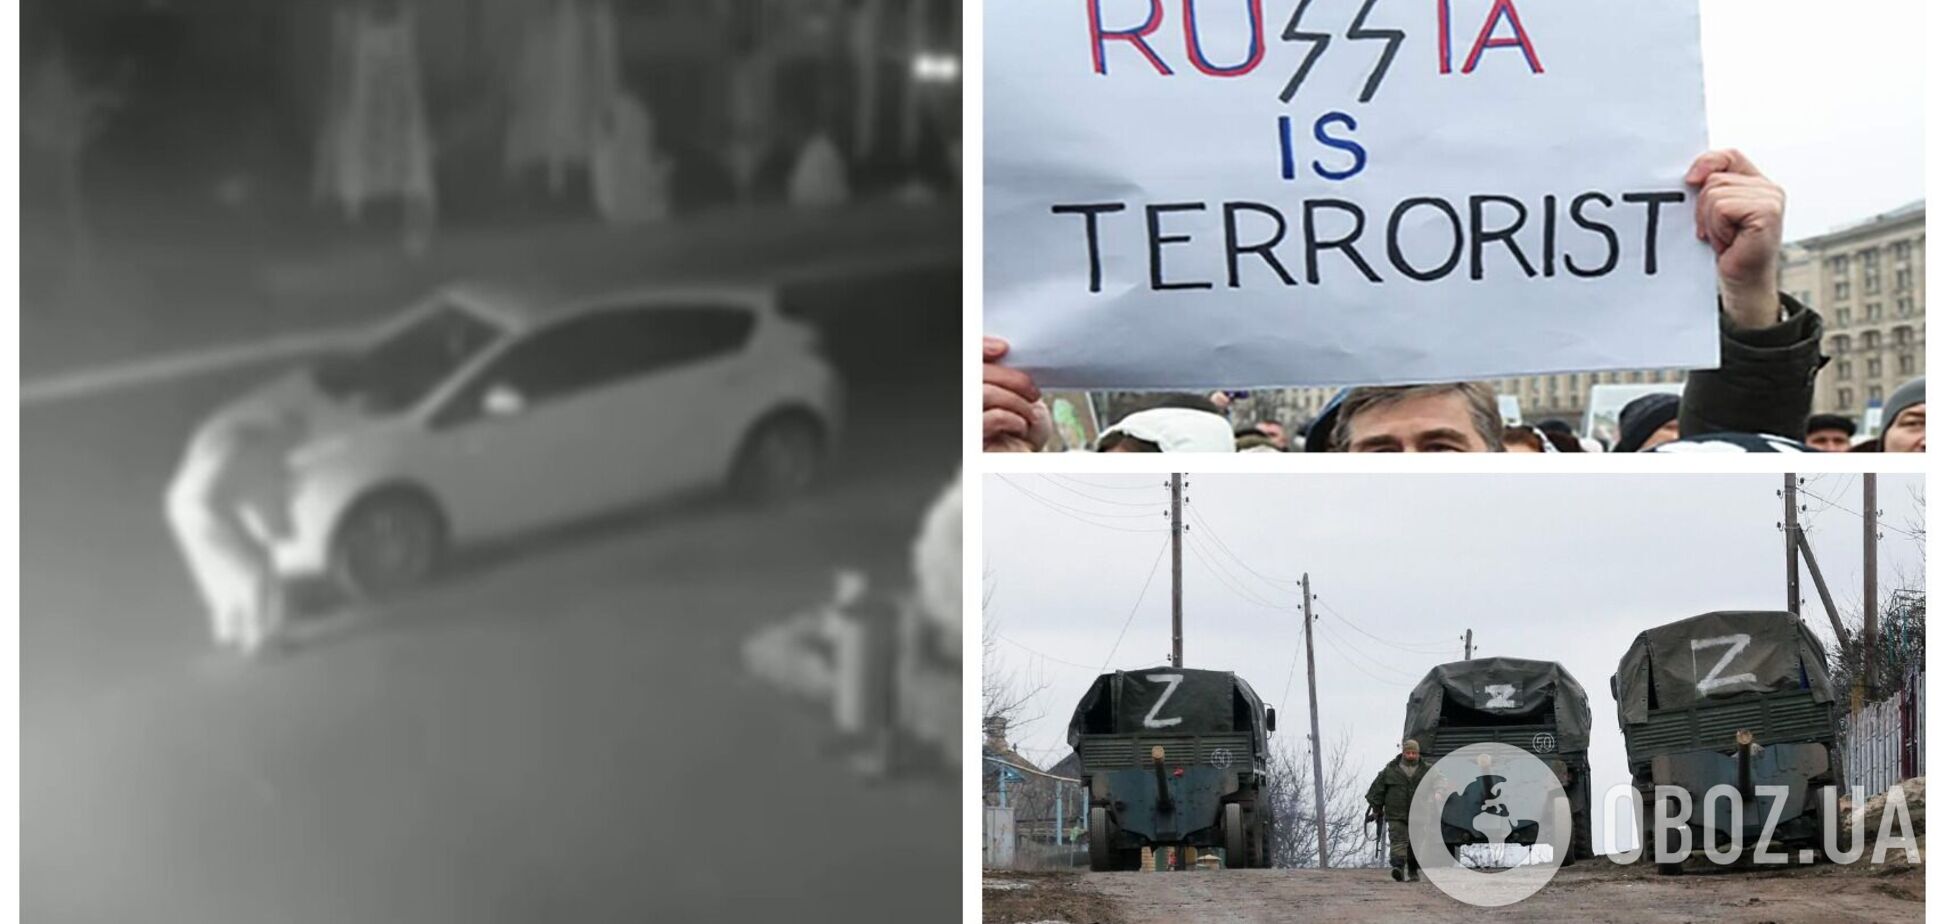 Партизани працюють: у російському Краснодарі спалили два автомобілі з Z-символікою. Відео